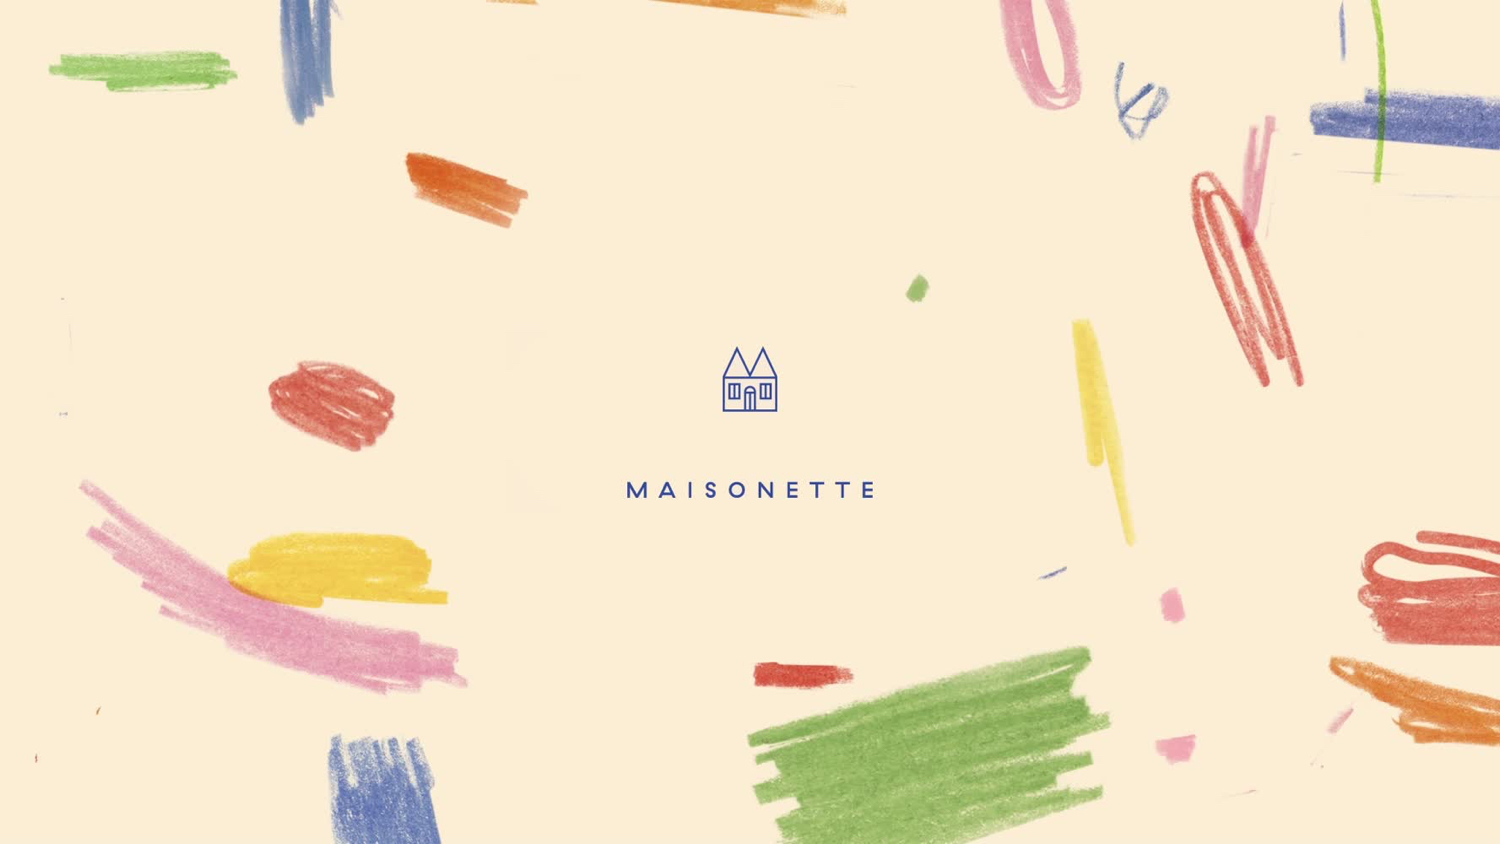 Logo and visual identity for children's online retailer Maisonette by Lotta Nieminen Studio New York